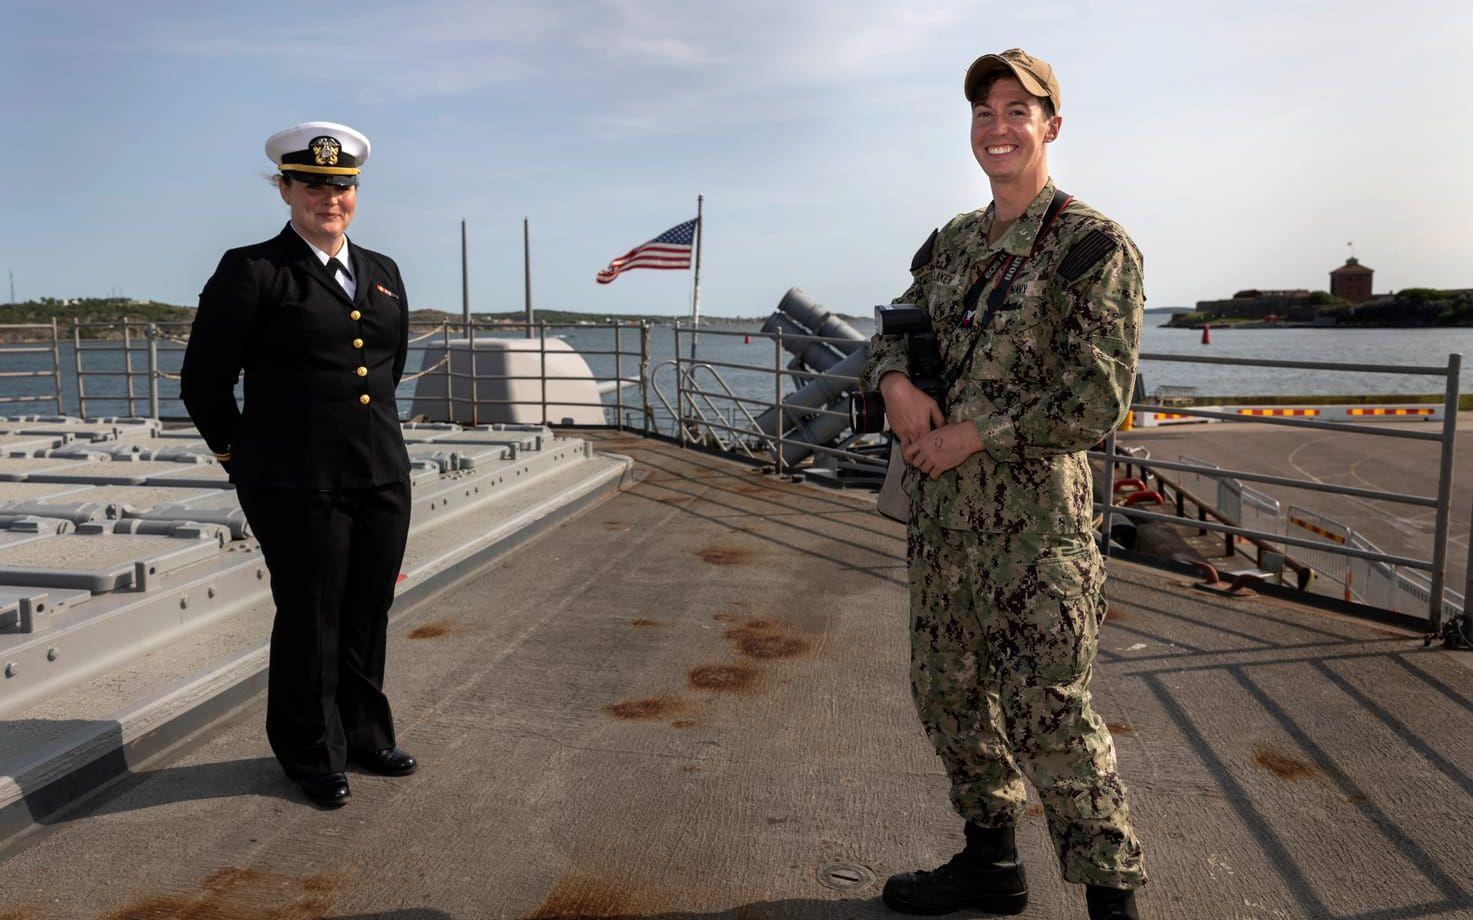  LTJG Elizabeth Armstrong och Petty Officer second class Malachi Lakey ombord på den amerikanska missilkryssaren USS Normandy som besöker Göteborg, i bakgrunden Nya Älvsborgs fästning. 